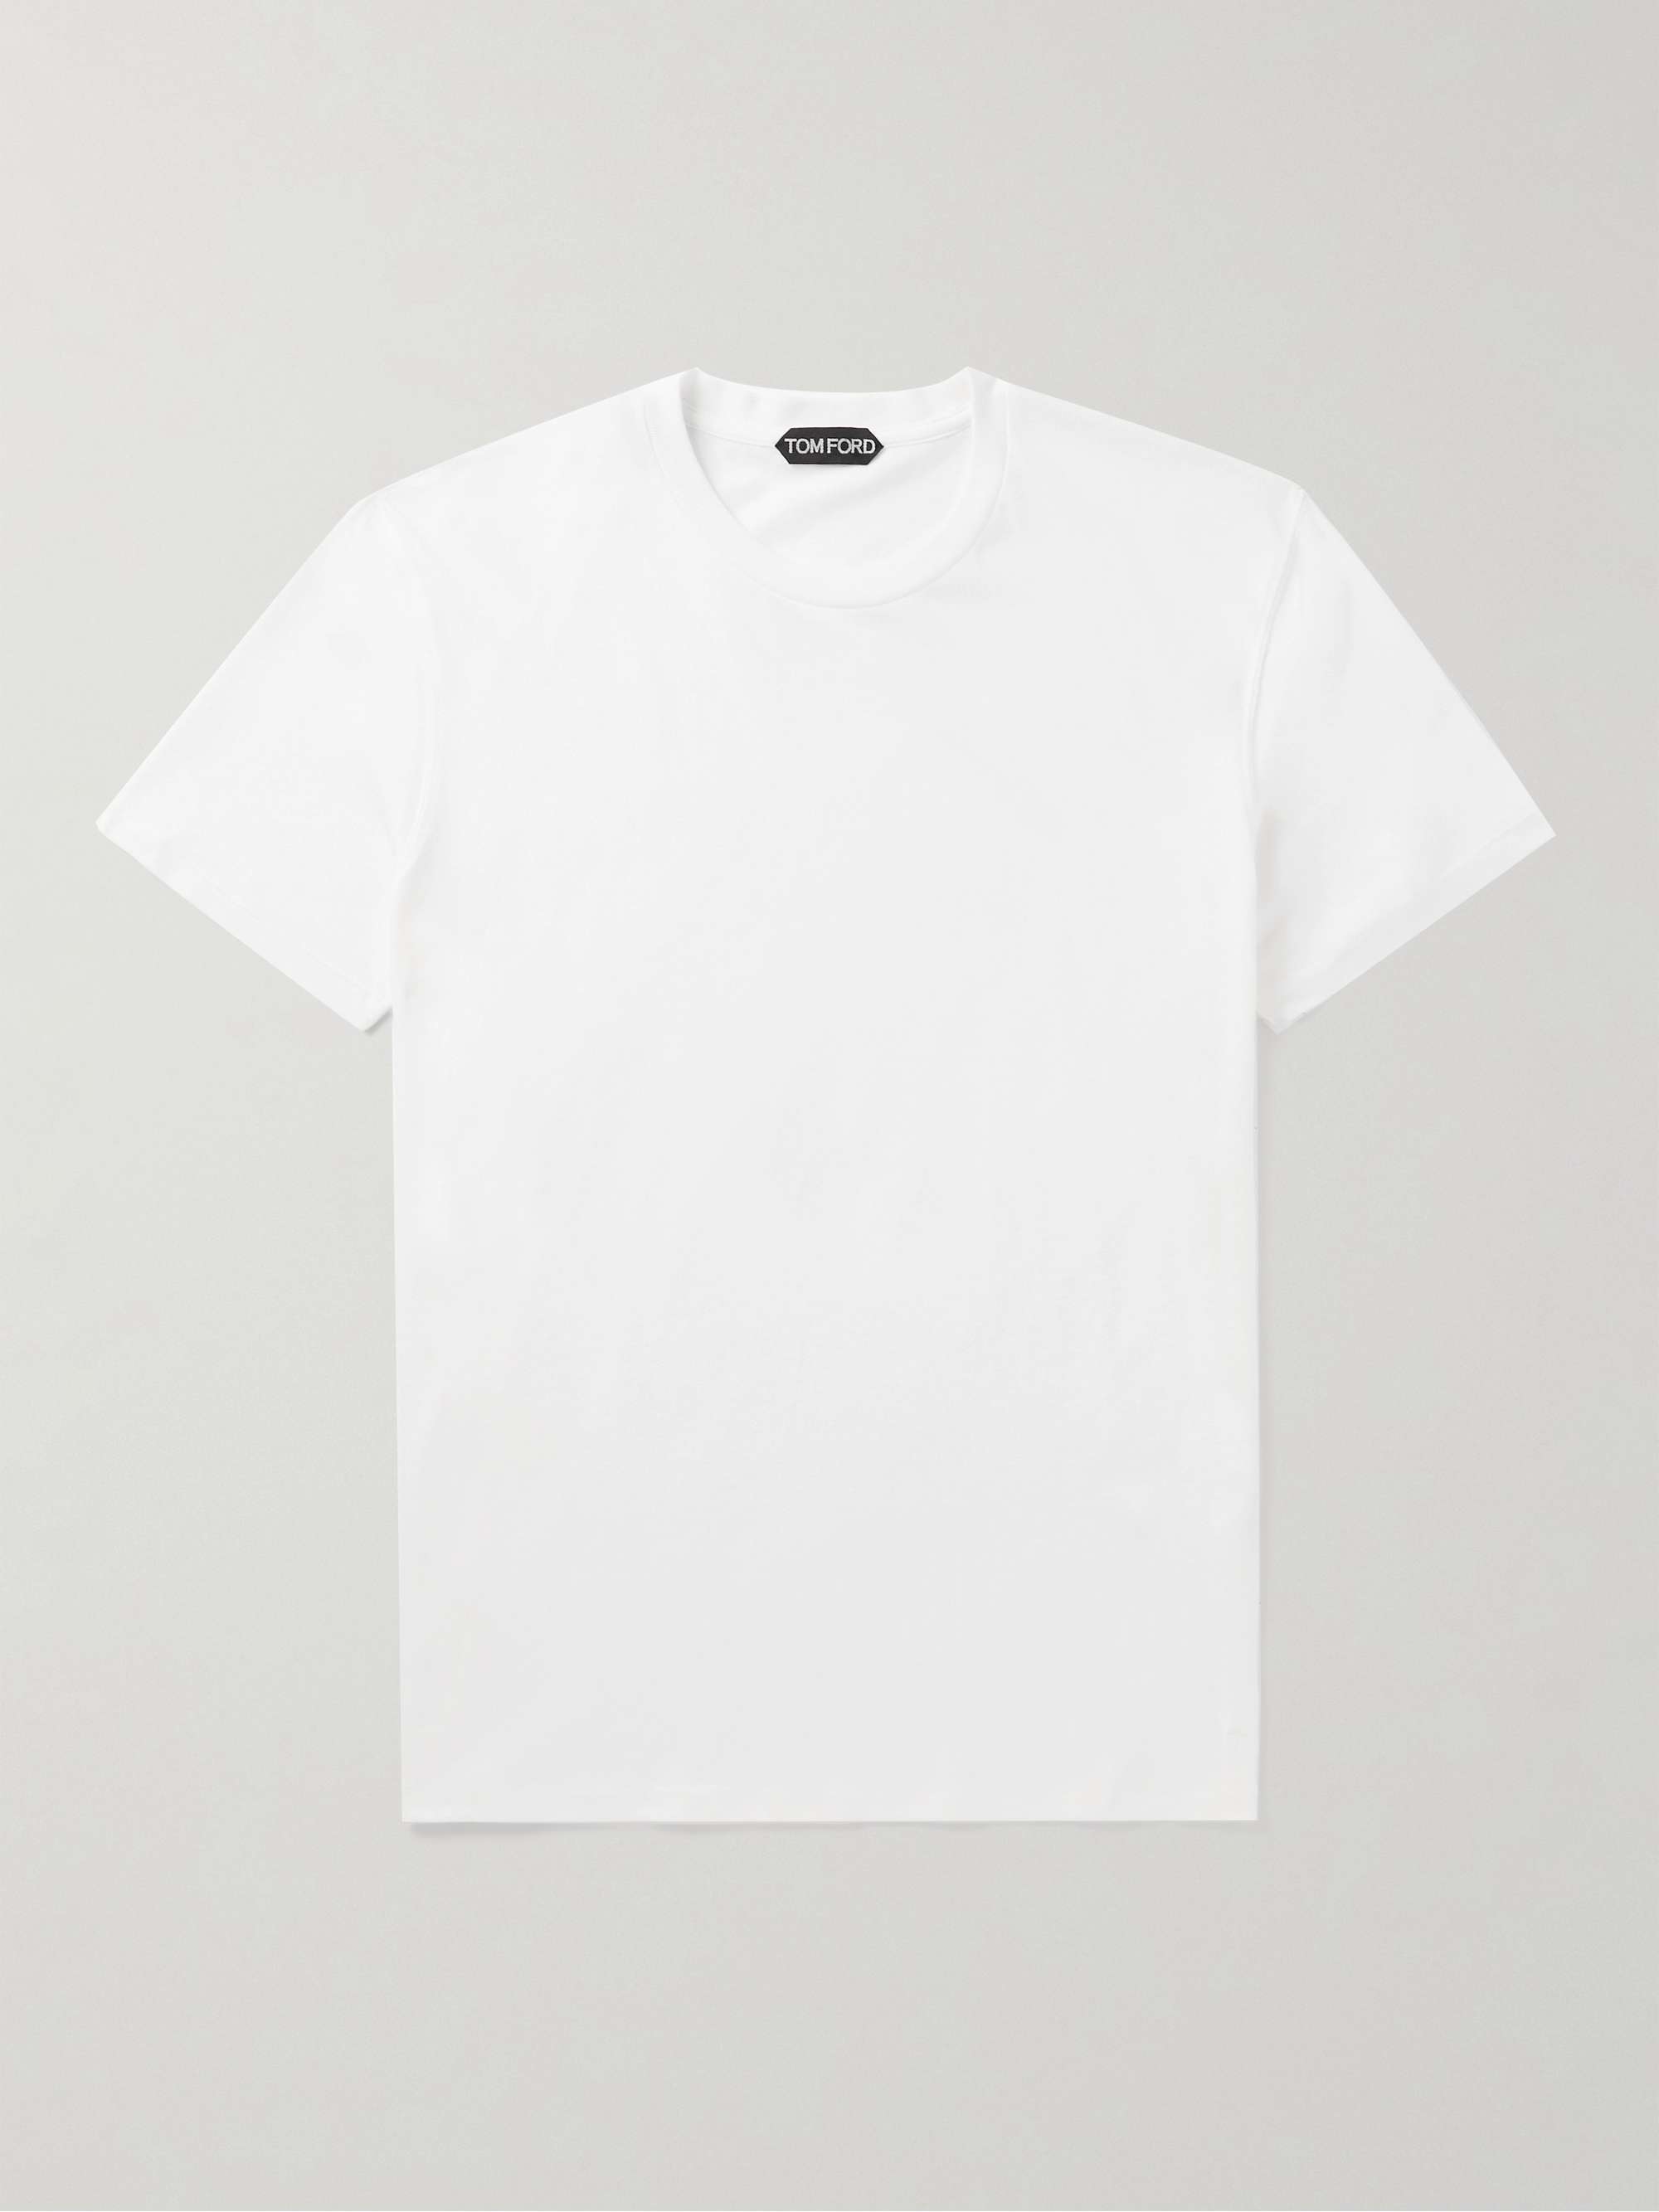 TOM FORD Slim-Fit Cotton-Blend Jersey T-Shirt | MR PORTER